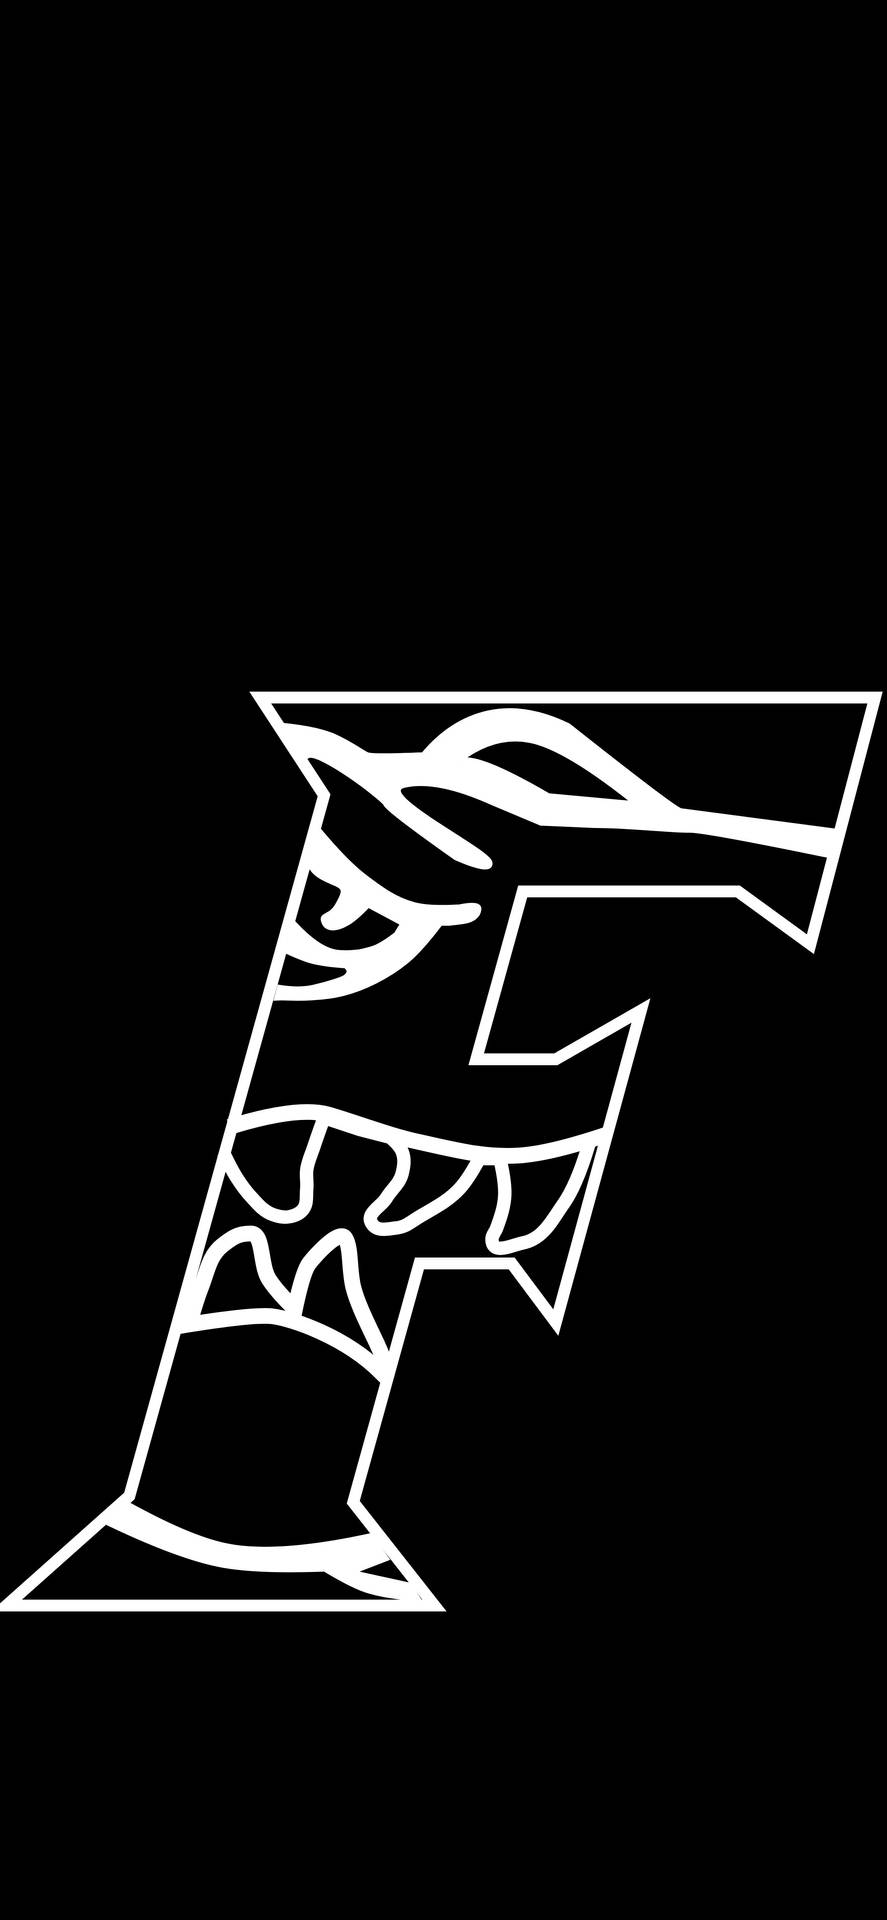 Logotipoinicial De Los Florida Gators En Negro Fondo de pantalla